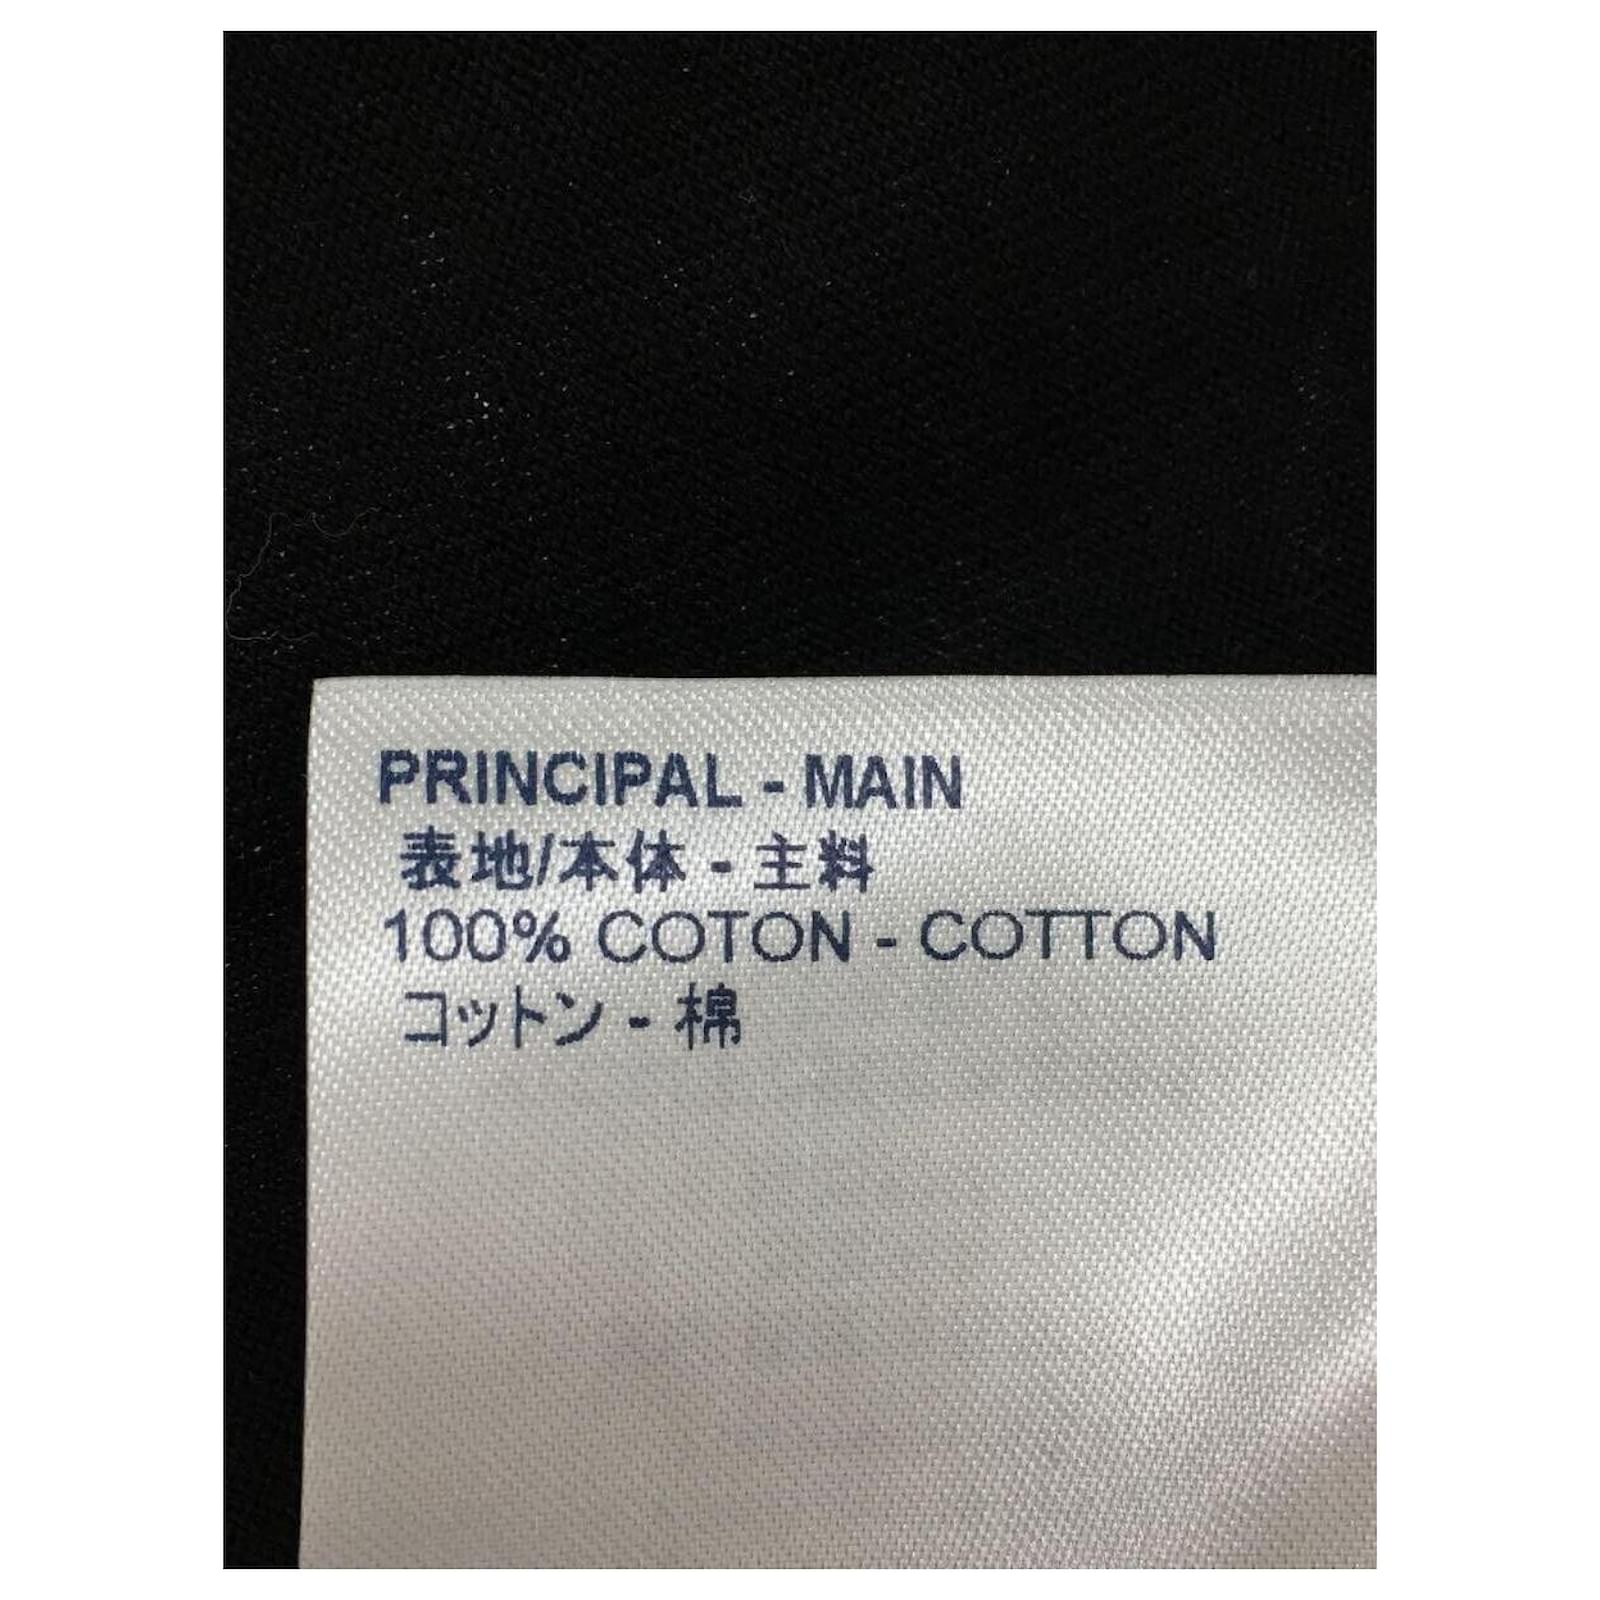 LOUIS VUITTON T-shirt / XL / Cotton / Black / RM201M NPG HIY17W / Spray